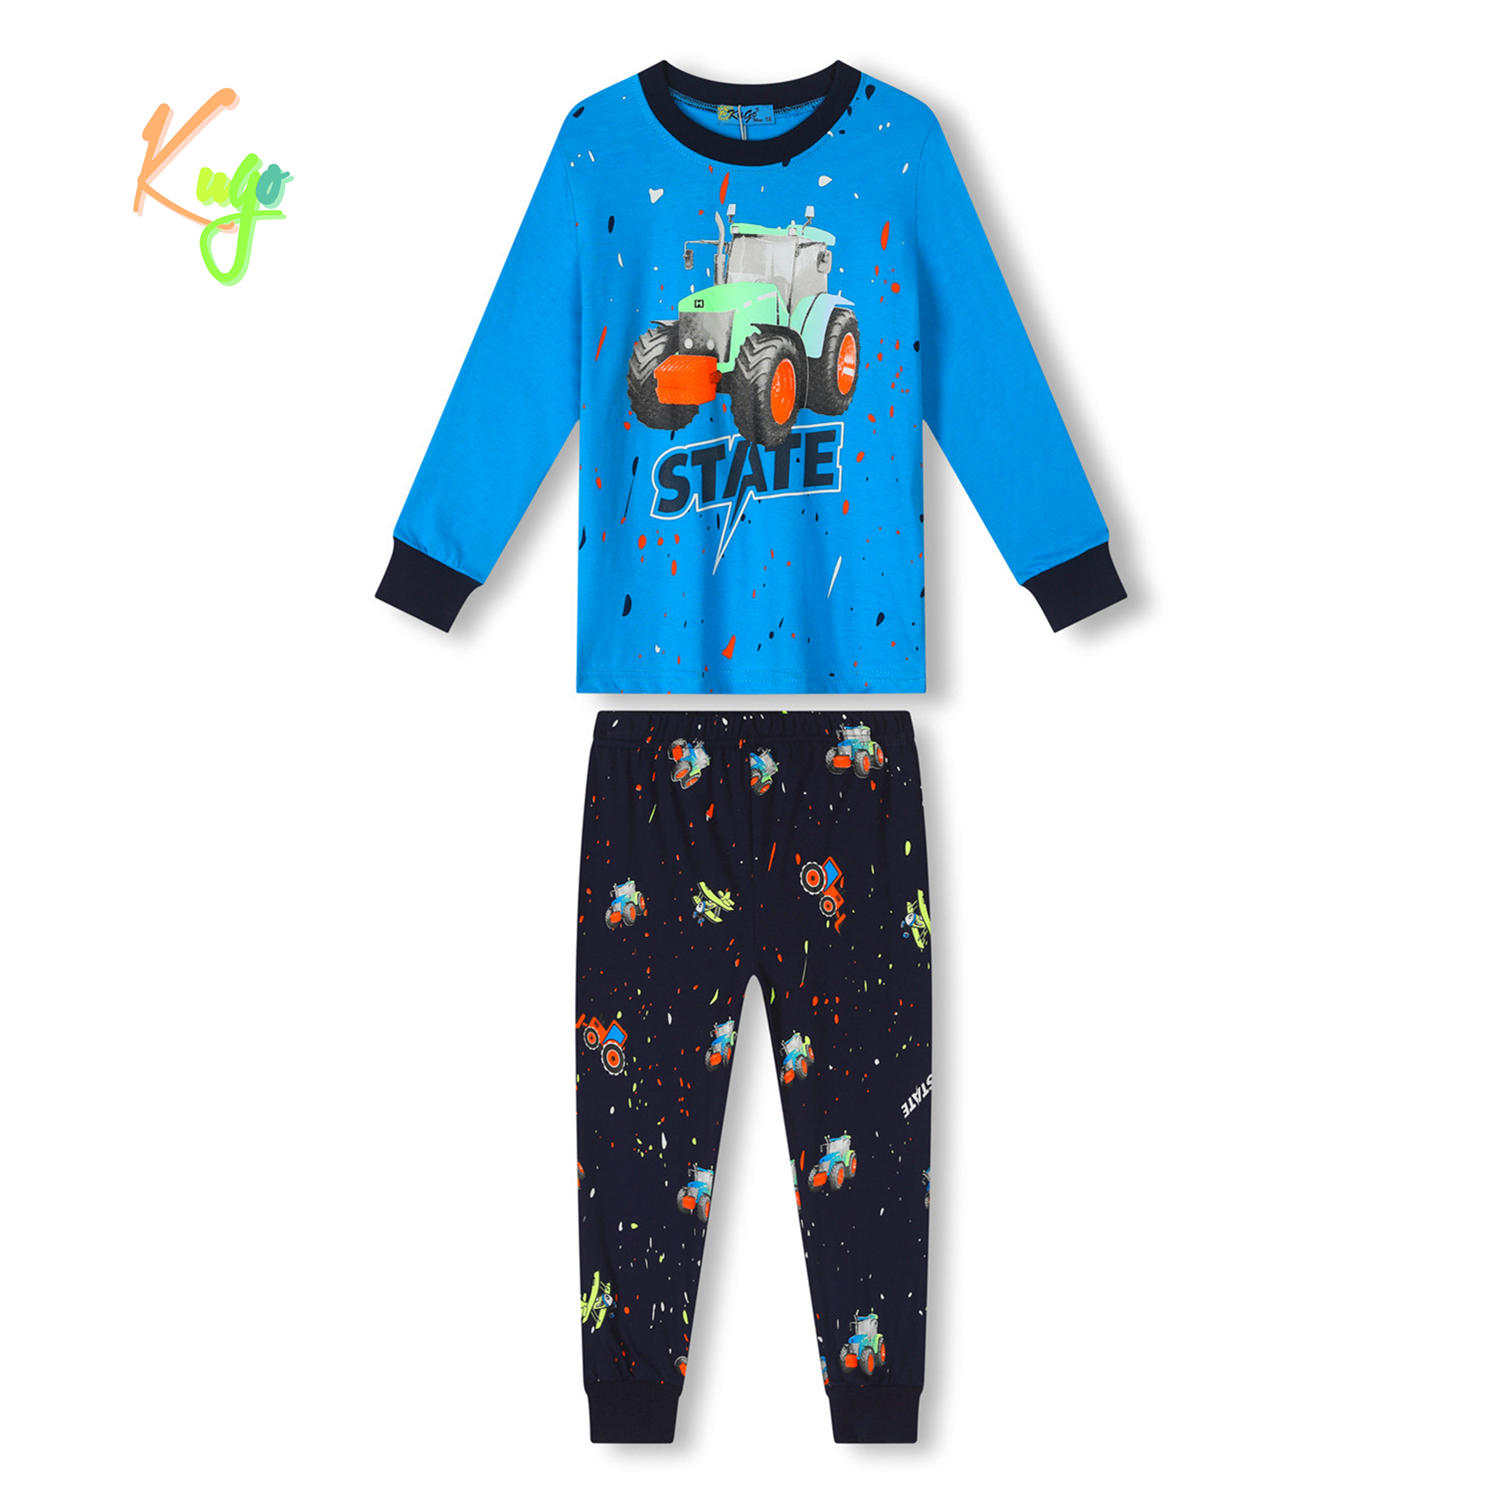 Chlapecké pyžamo - KUGO MP3779, tyrkysová Barva: Tyrkysová, Velikost: 116